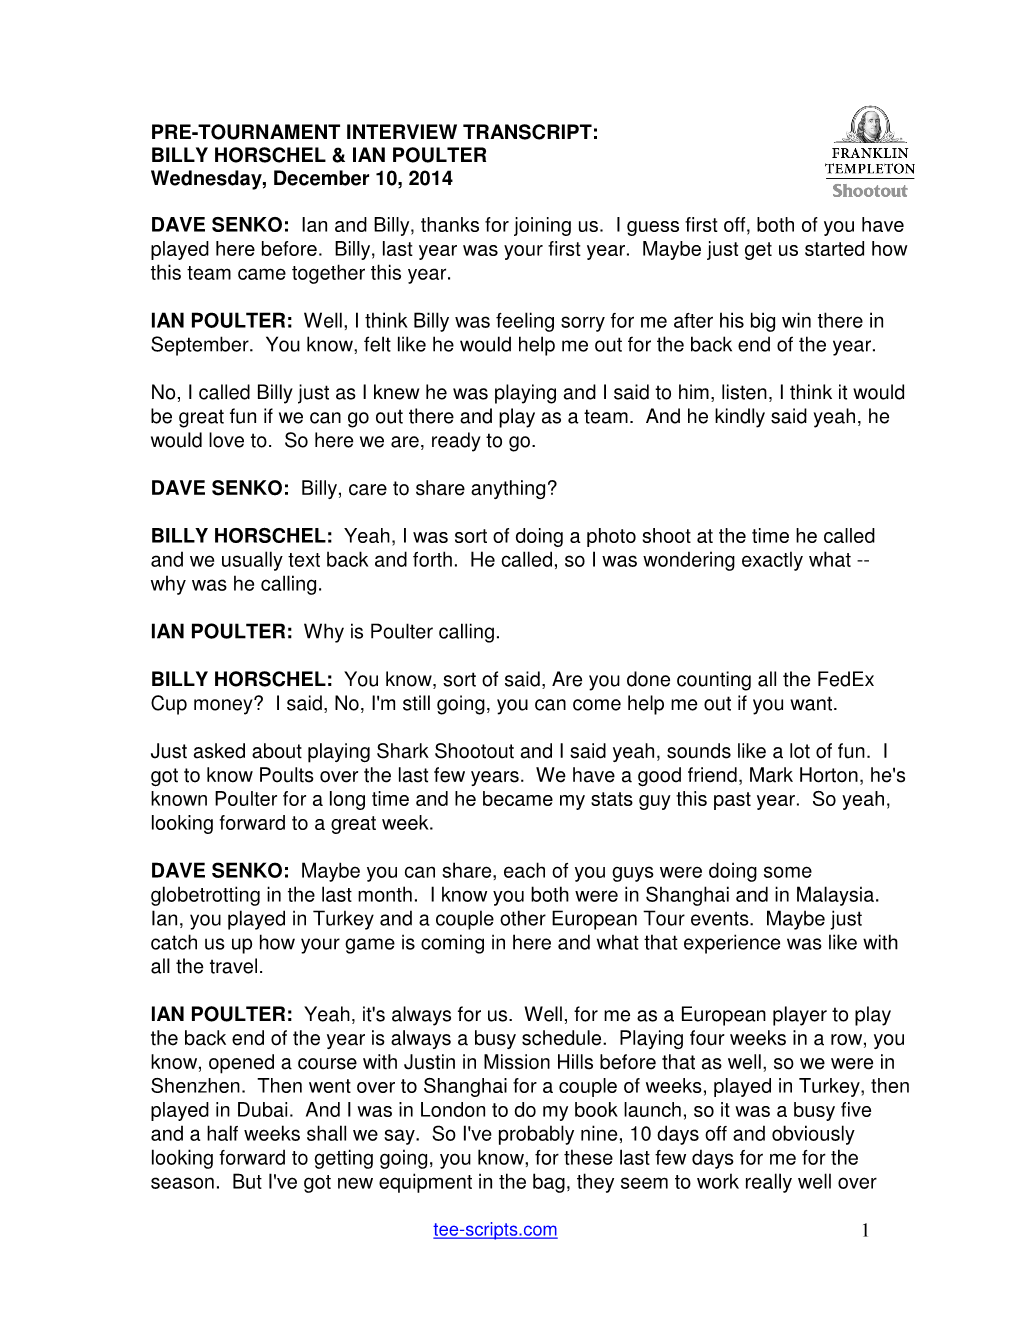 1 Pre-Tournament Interview Transcript: Billy Horschel